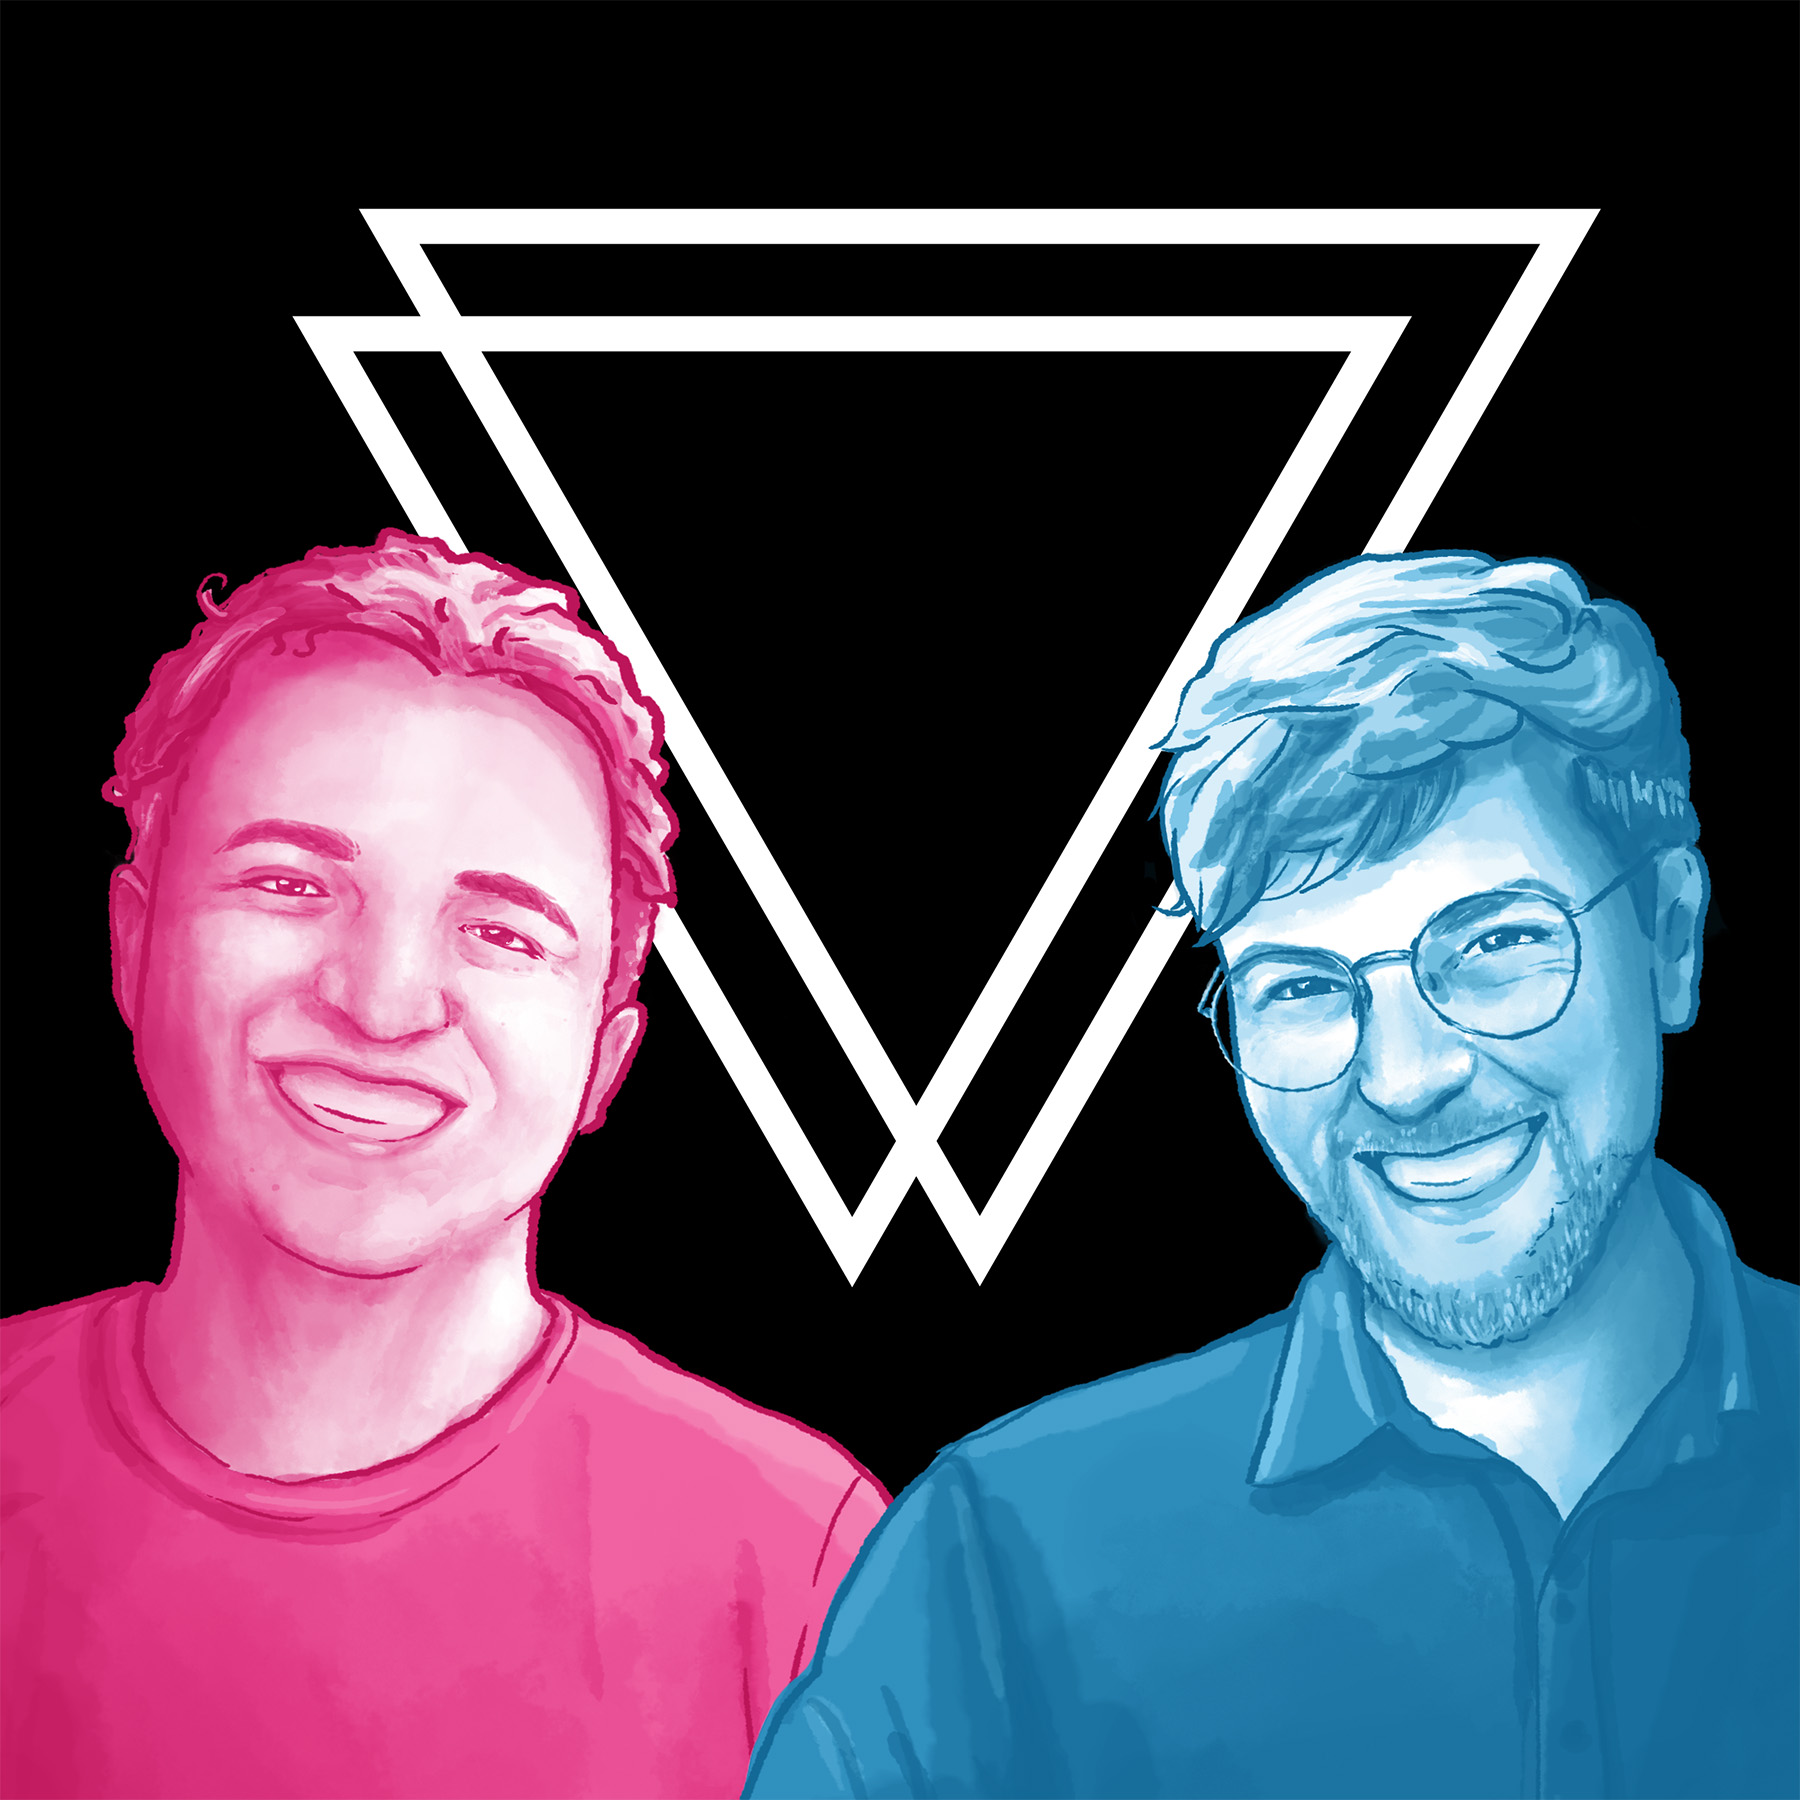 Podcast Cover: Links: Frederik Mallon in Pink, Rechts: Thomas Laschyk in Blau, monochrome digitale Zeichnungen. Beide grinsen freundlich. Hintergrund: Schwarz mit weißem Volksverpetzer-Logo.